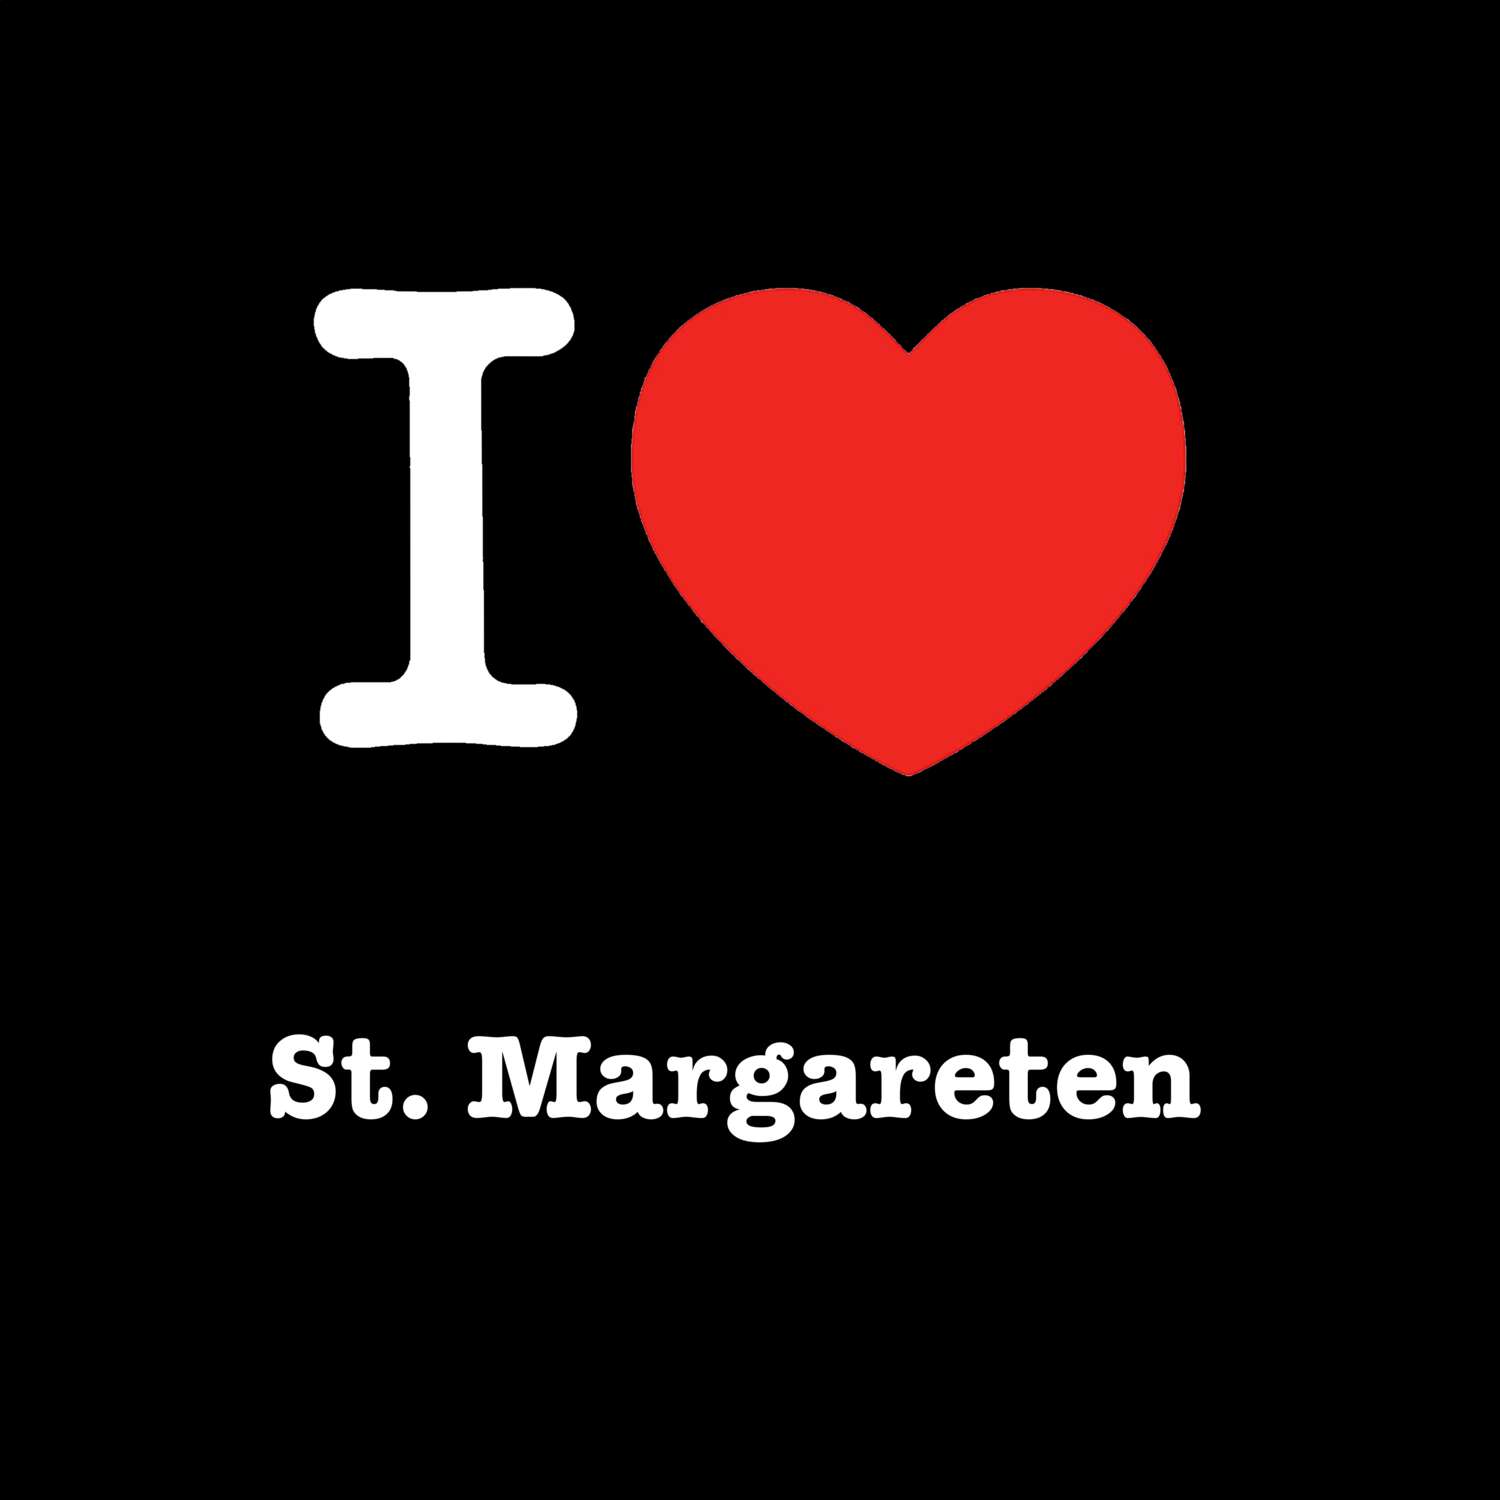 St. Margareten T-Shirt »I love«